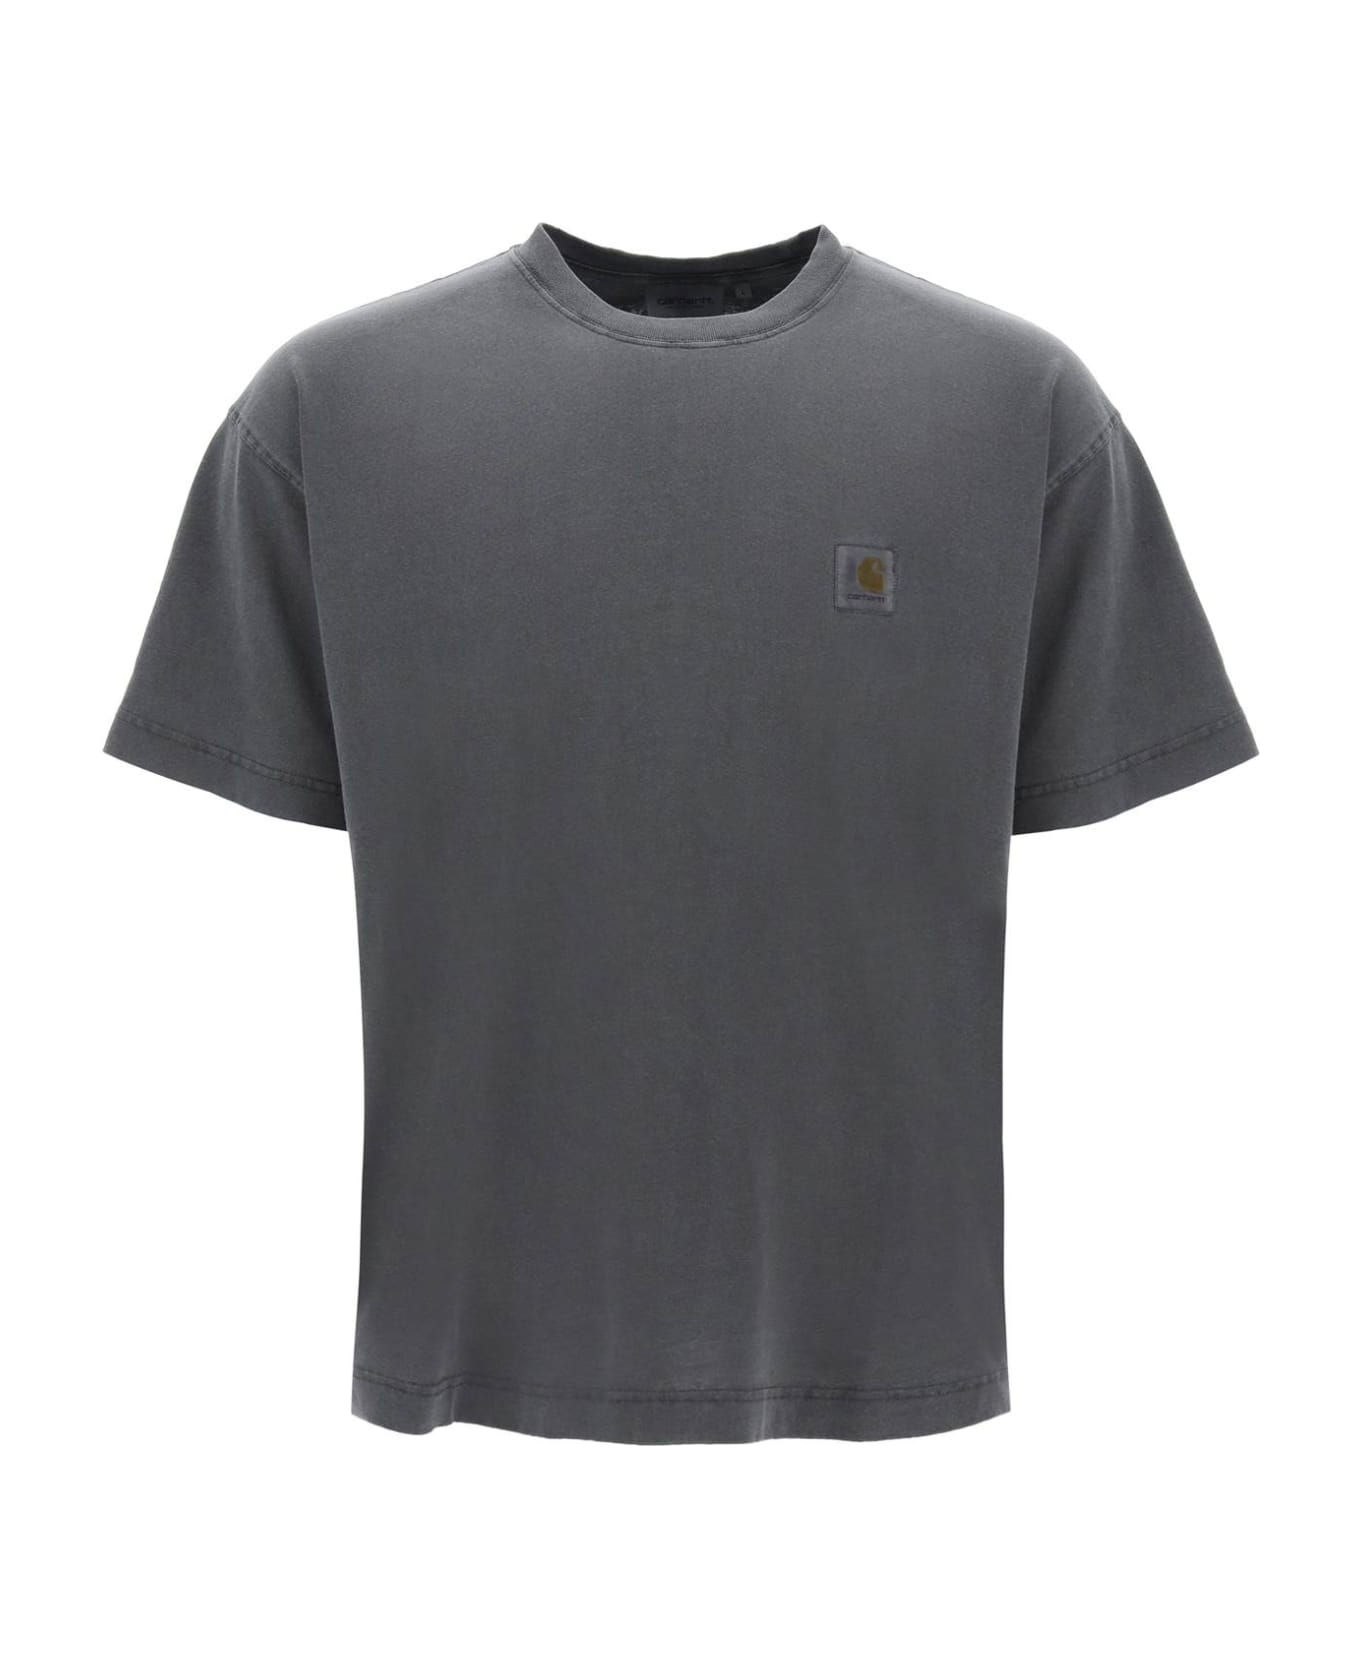 Carhartt Nelson T-shirt - .gd Charcoal Garment Dyed